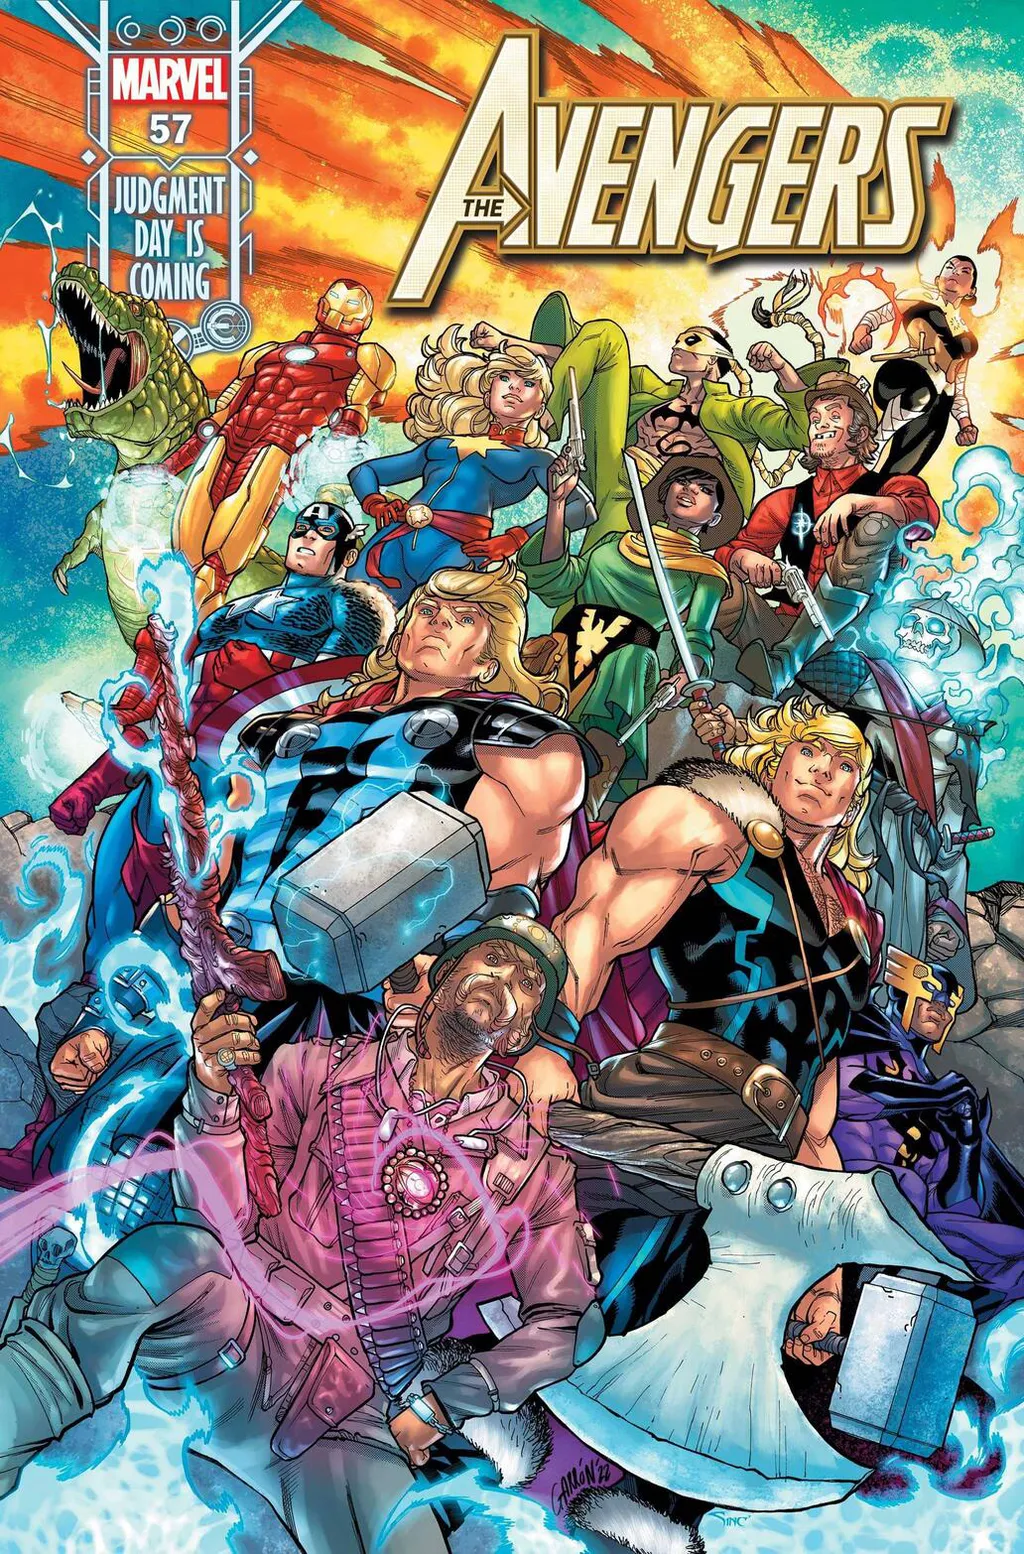 Capa de Avengers nº 57 da Marvel traz novos Vingadores (Imagem: eprodução/Marvel)